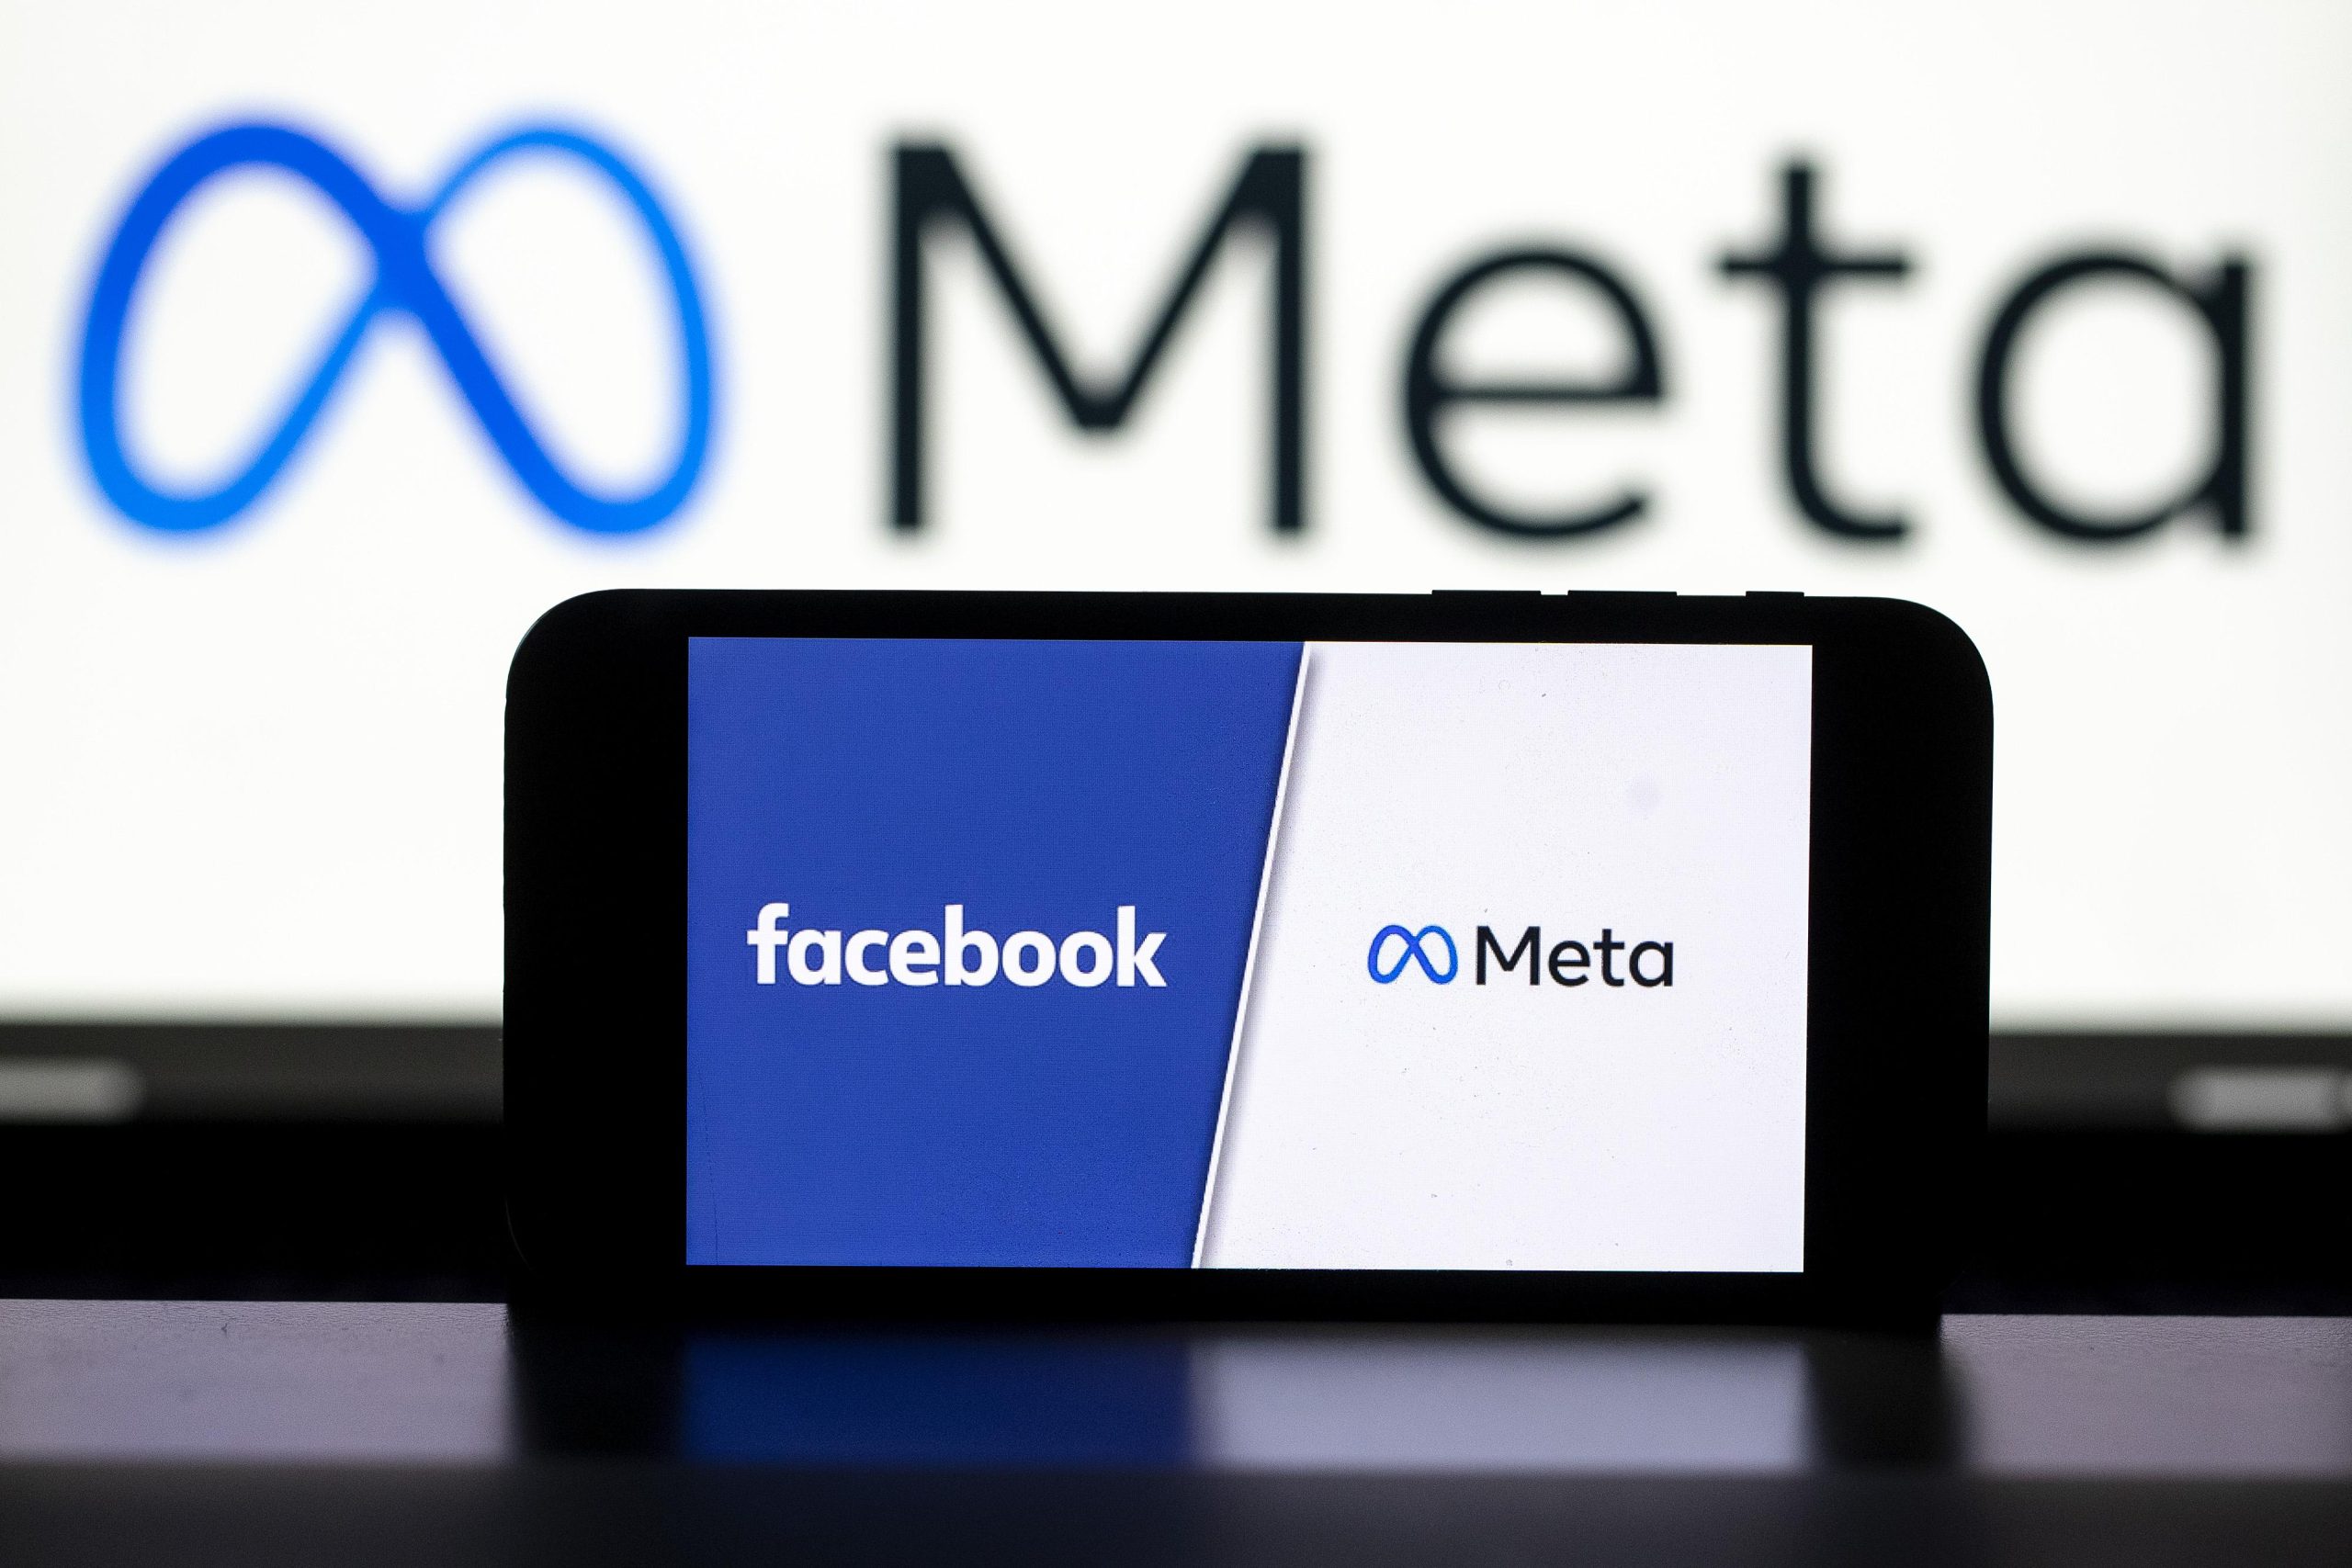 29.10.2021., Zagreb -  Osnivac tvrtke Facebook Mark Zuckerberg objavio je da mijenja naziv tvrtke u novi naziv Meta. Novi naziv tvrtke potjece iz novog smjera u kojemu se tvrtka krece, a to je stvaranje metaverzuma.